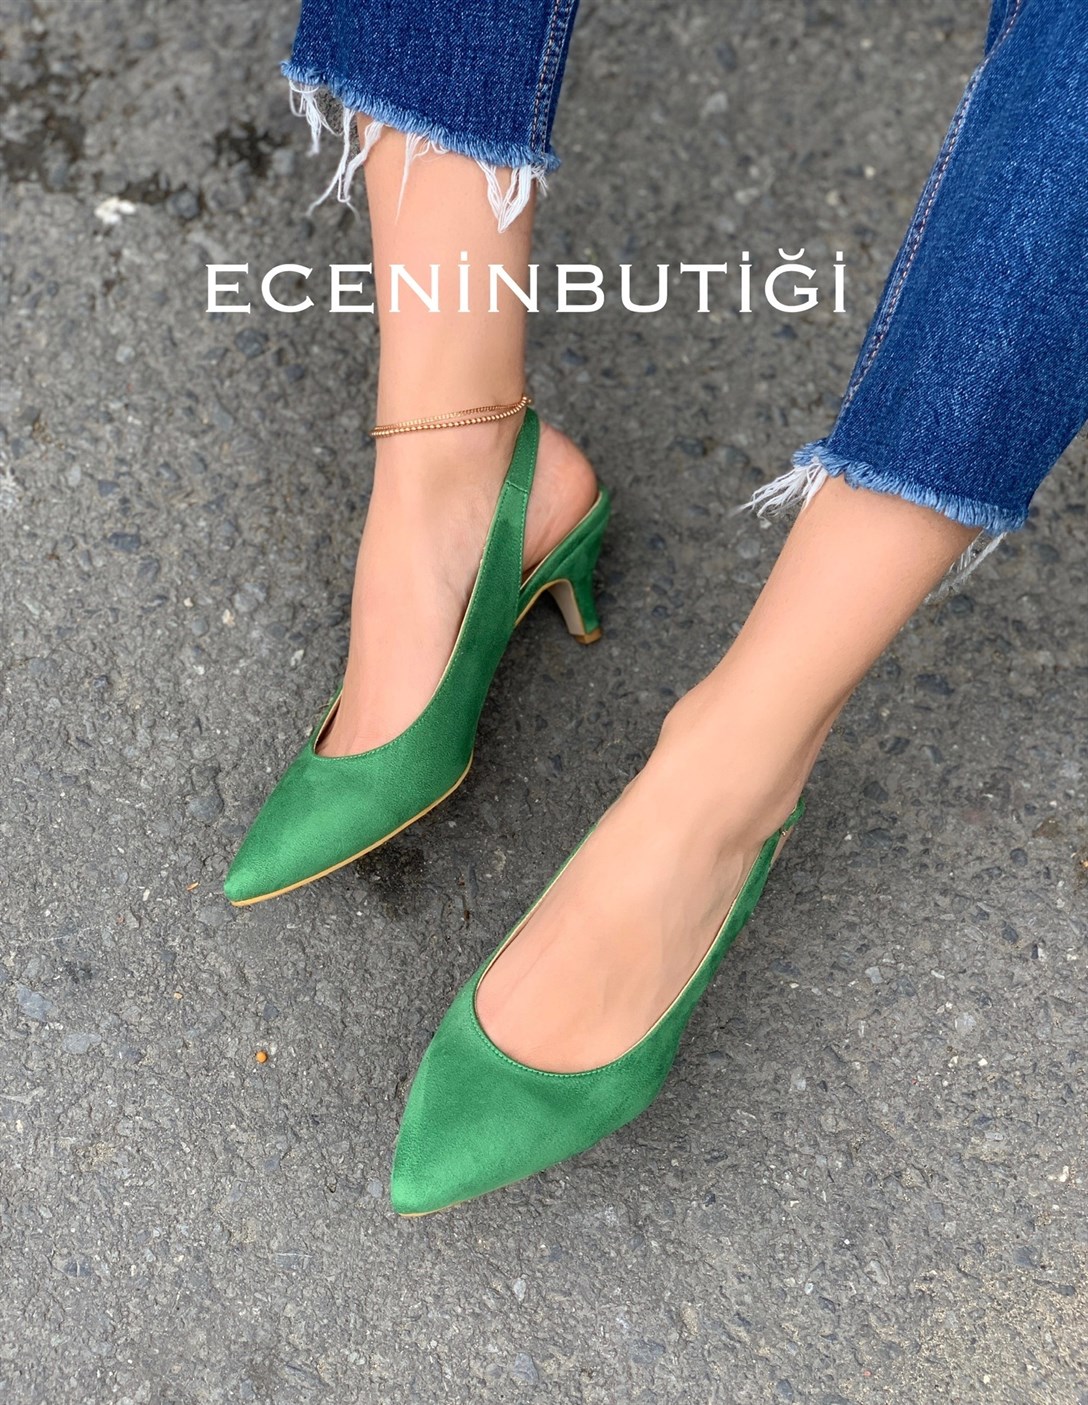 Peri - Topuklu Ayakkabı - Yeşil Süet | Ece'nin Butiği